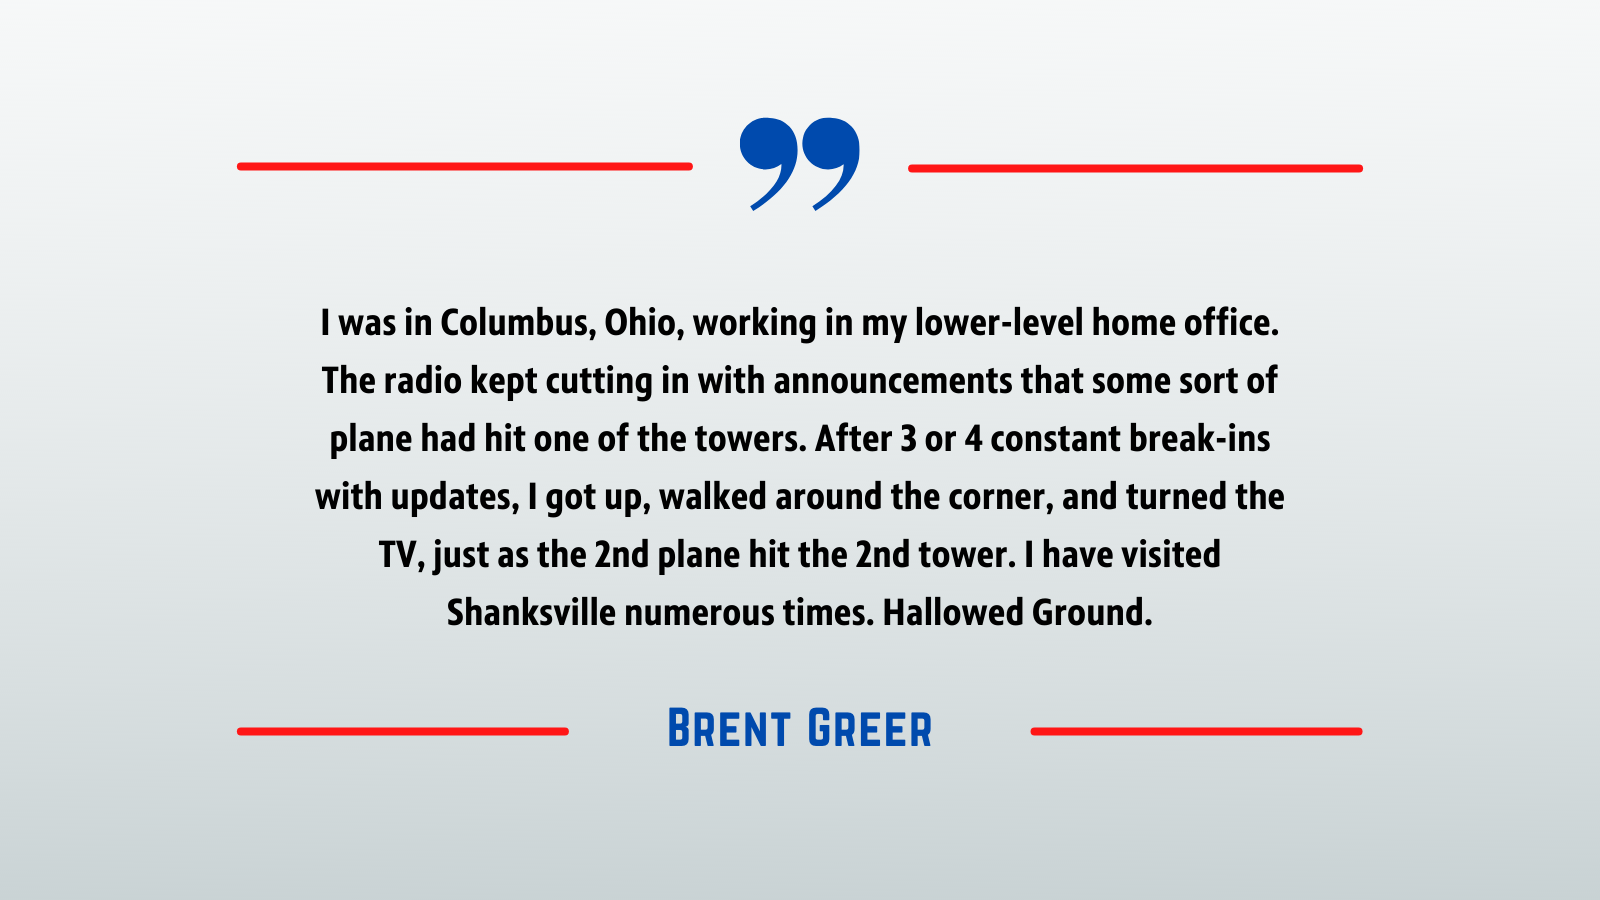 September 11 - Brent Greer